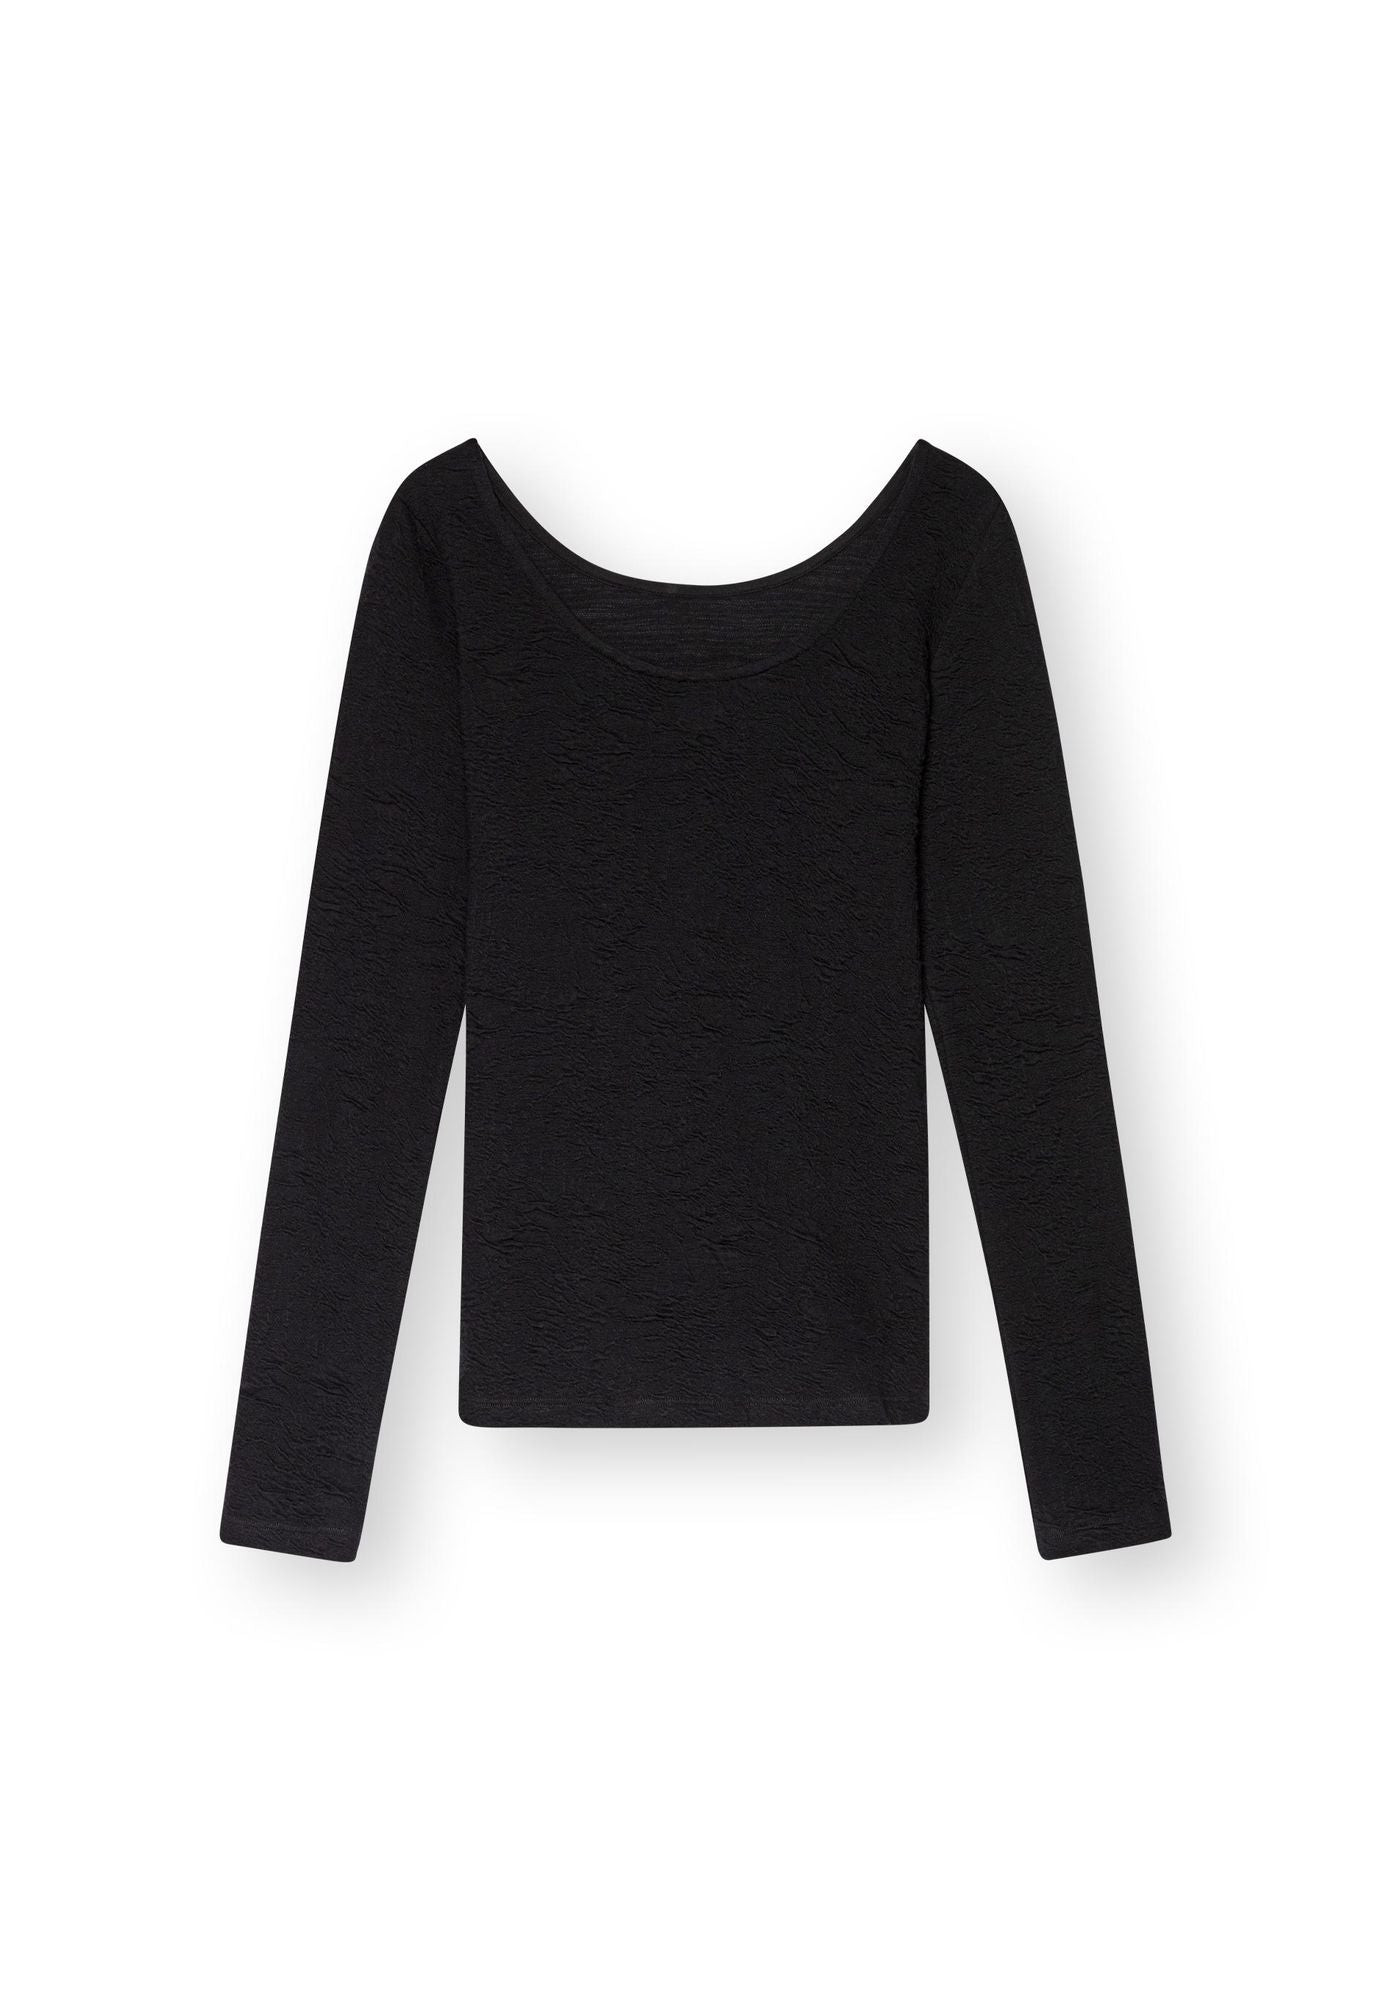 Longsleeve-Shirt OPPLIA in schwarz von LOVJOI aus Bio-Baumwolle